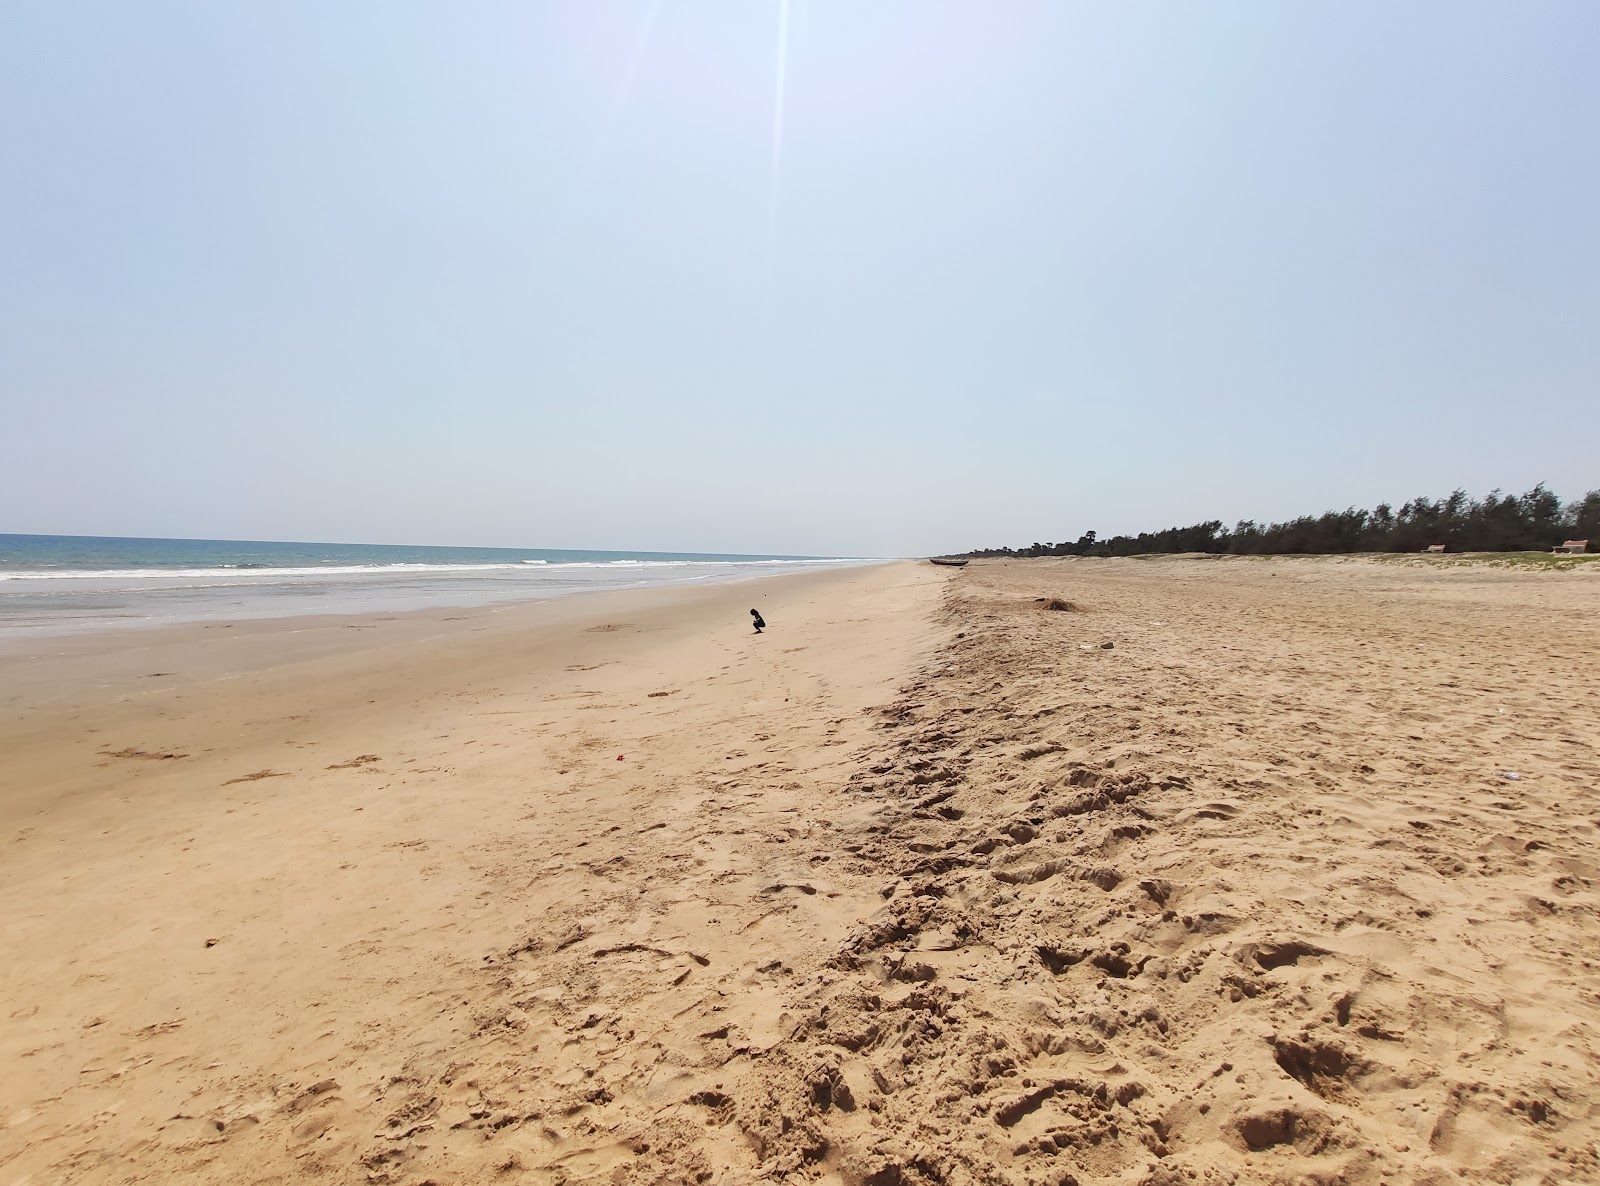 Jagannnadhapuram Beach'in fotoğrafı parlak kum yüzey ile